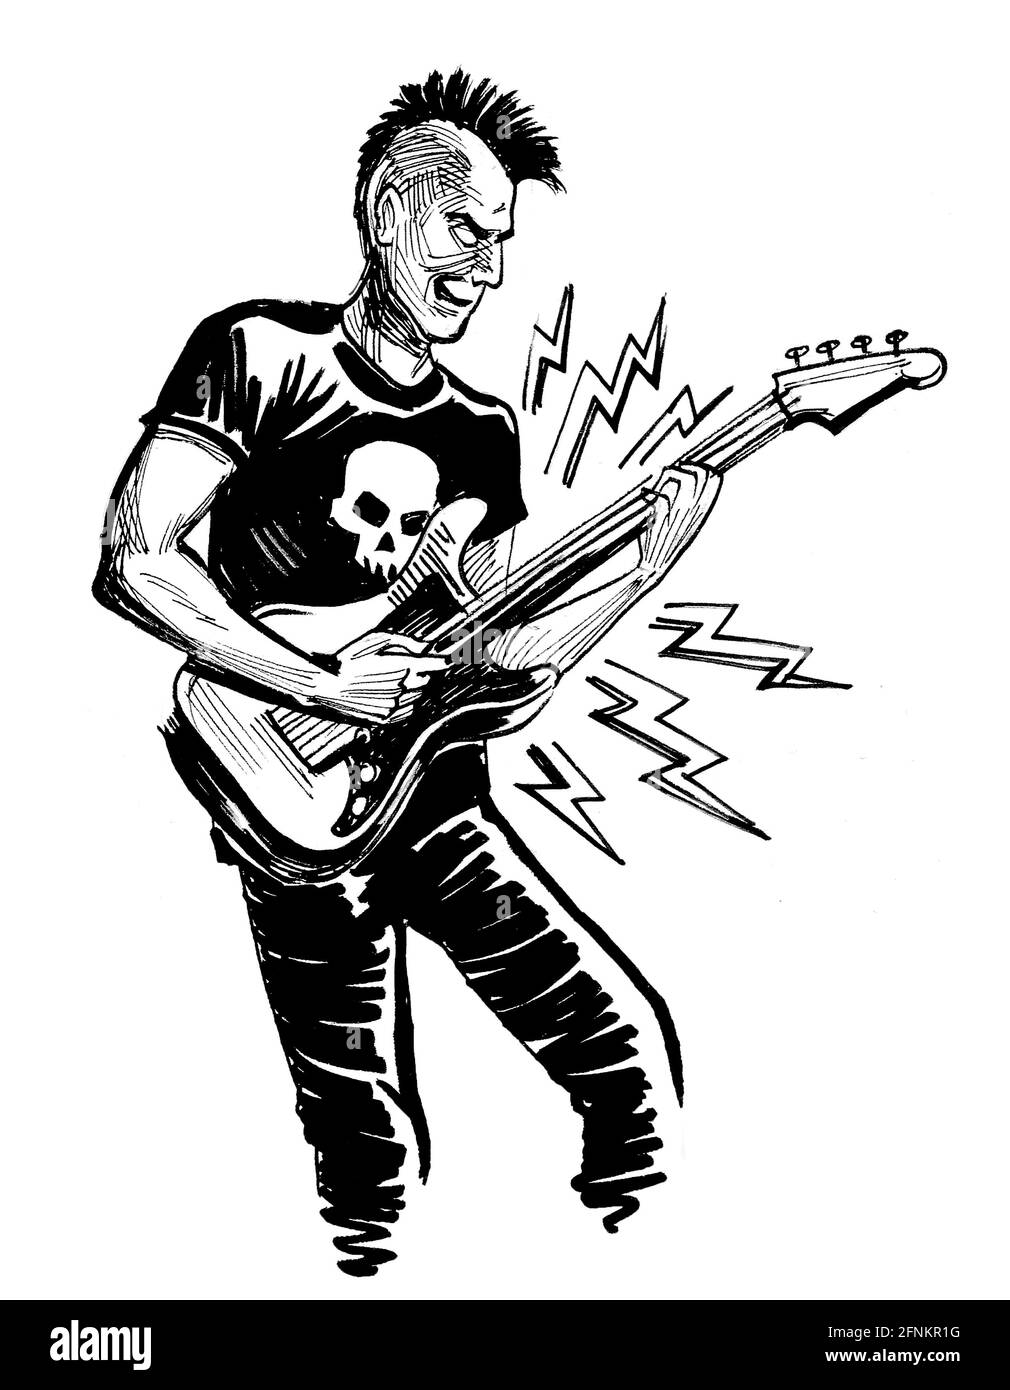 Punk Rocker jouant de la guitare électrique. Dessin noir et blanc Banque D'Images